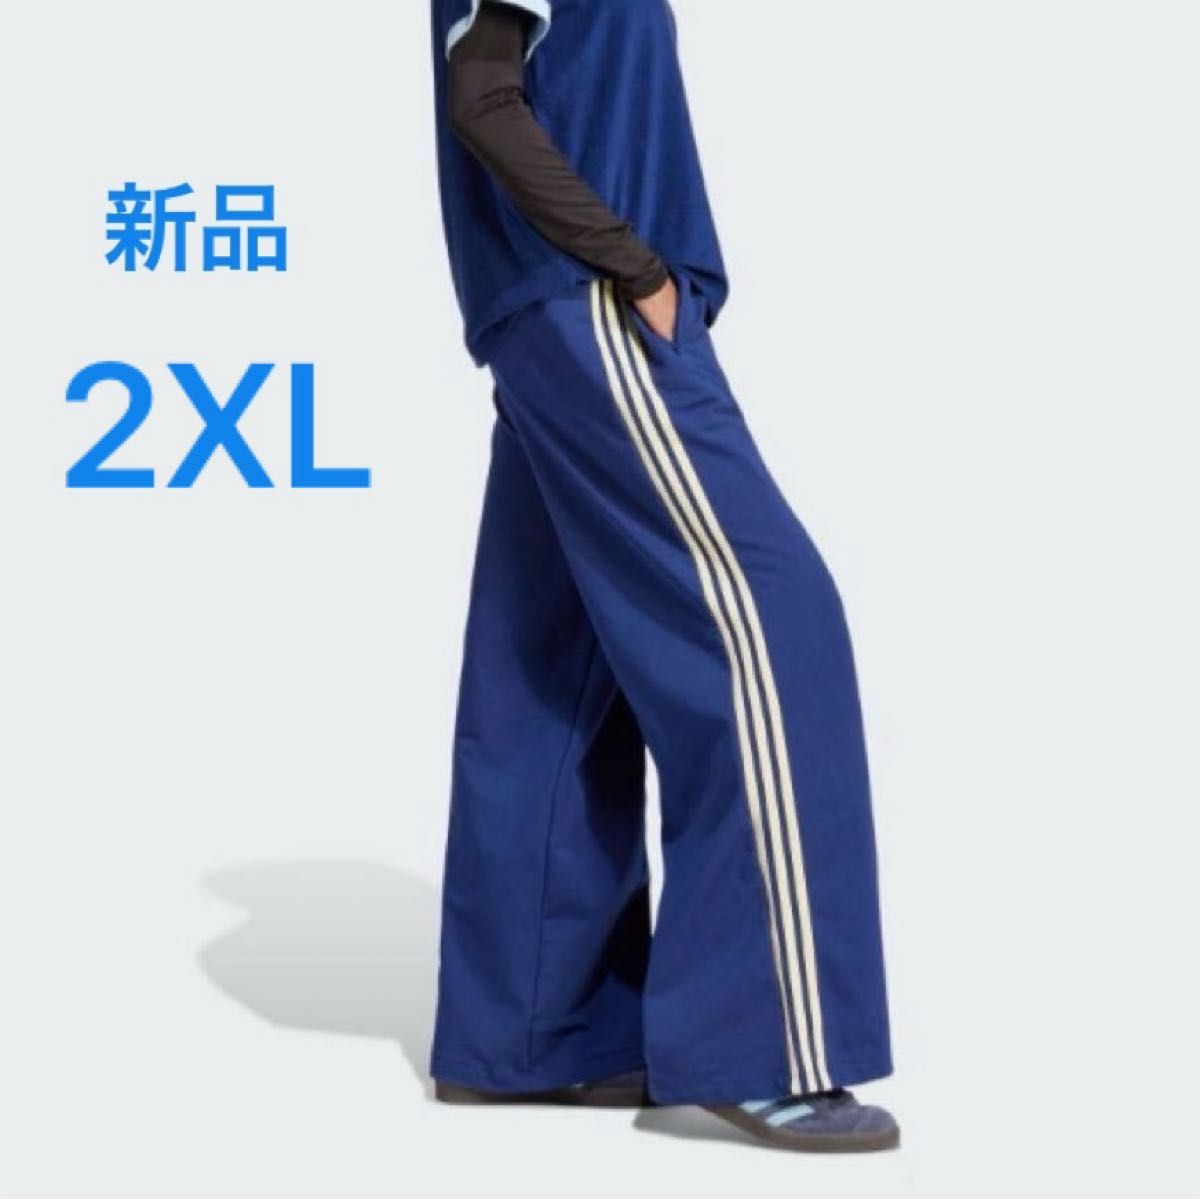 【新品】 adidas originals ワイドレッグパンツ 2XL